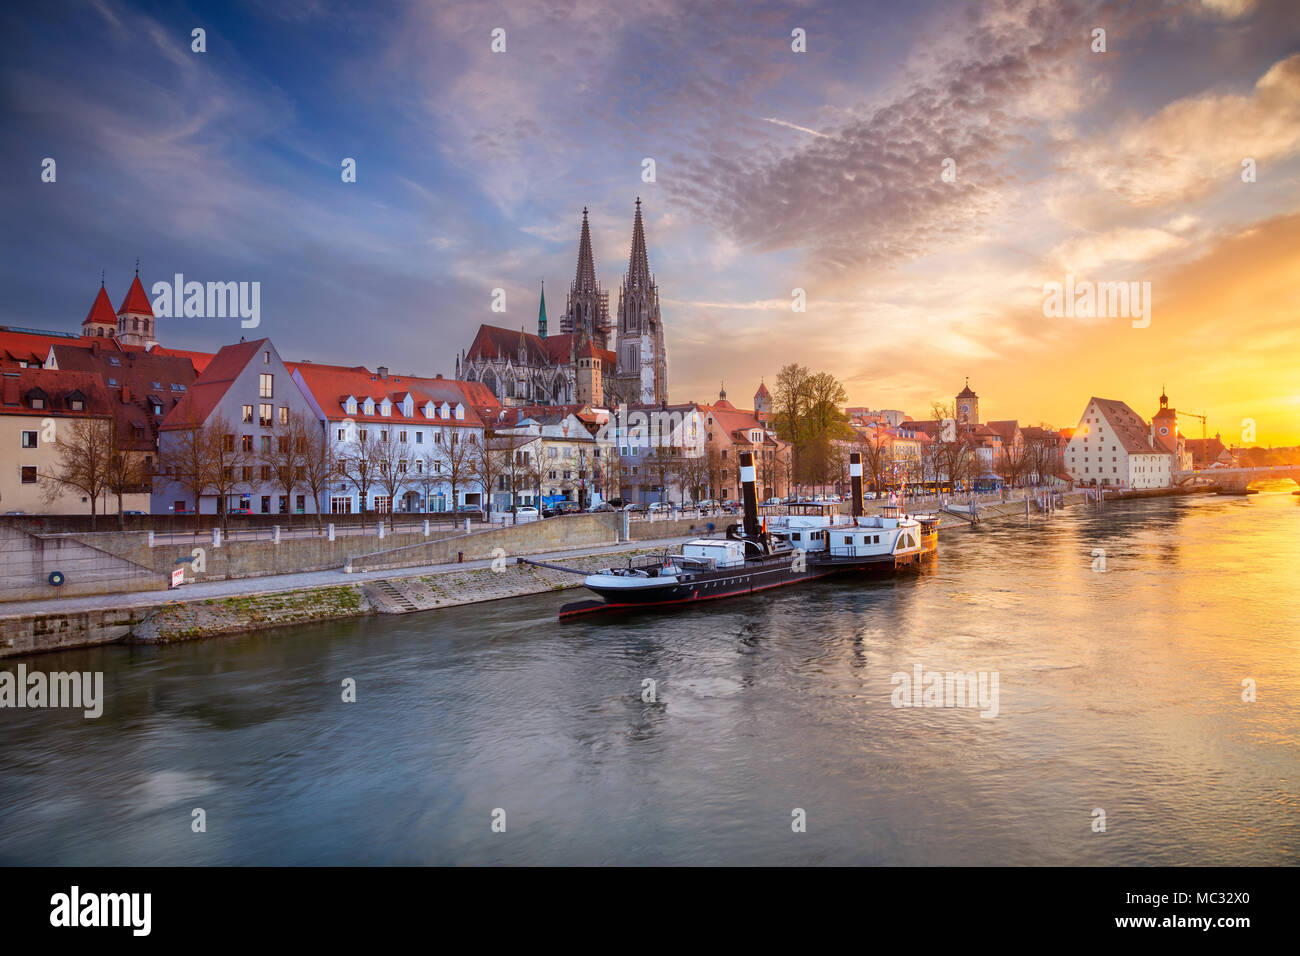 Regensburg. Cityscape image de Regensburg, Allemagne au printemps le coucher du soleil. Banque D'Images